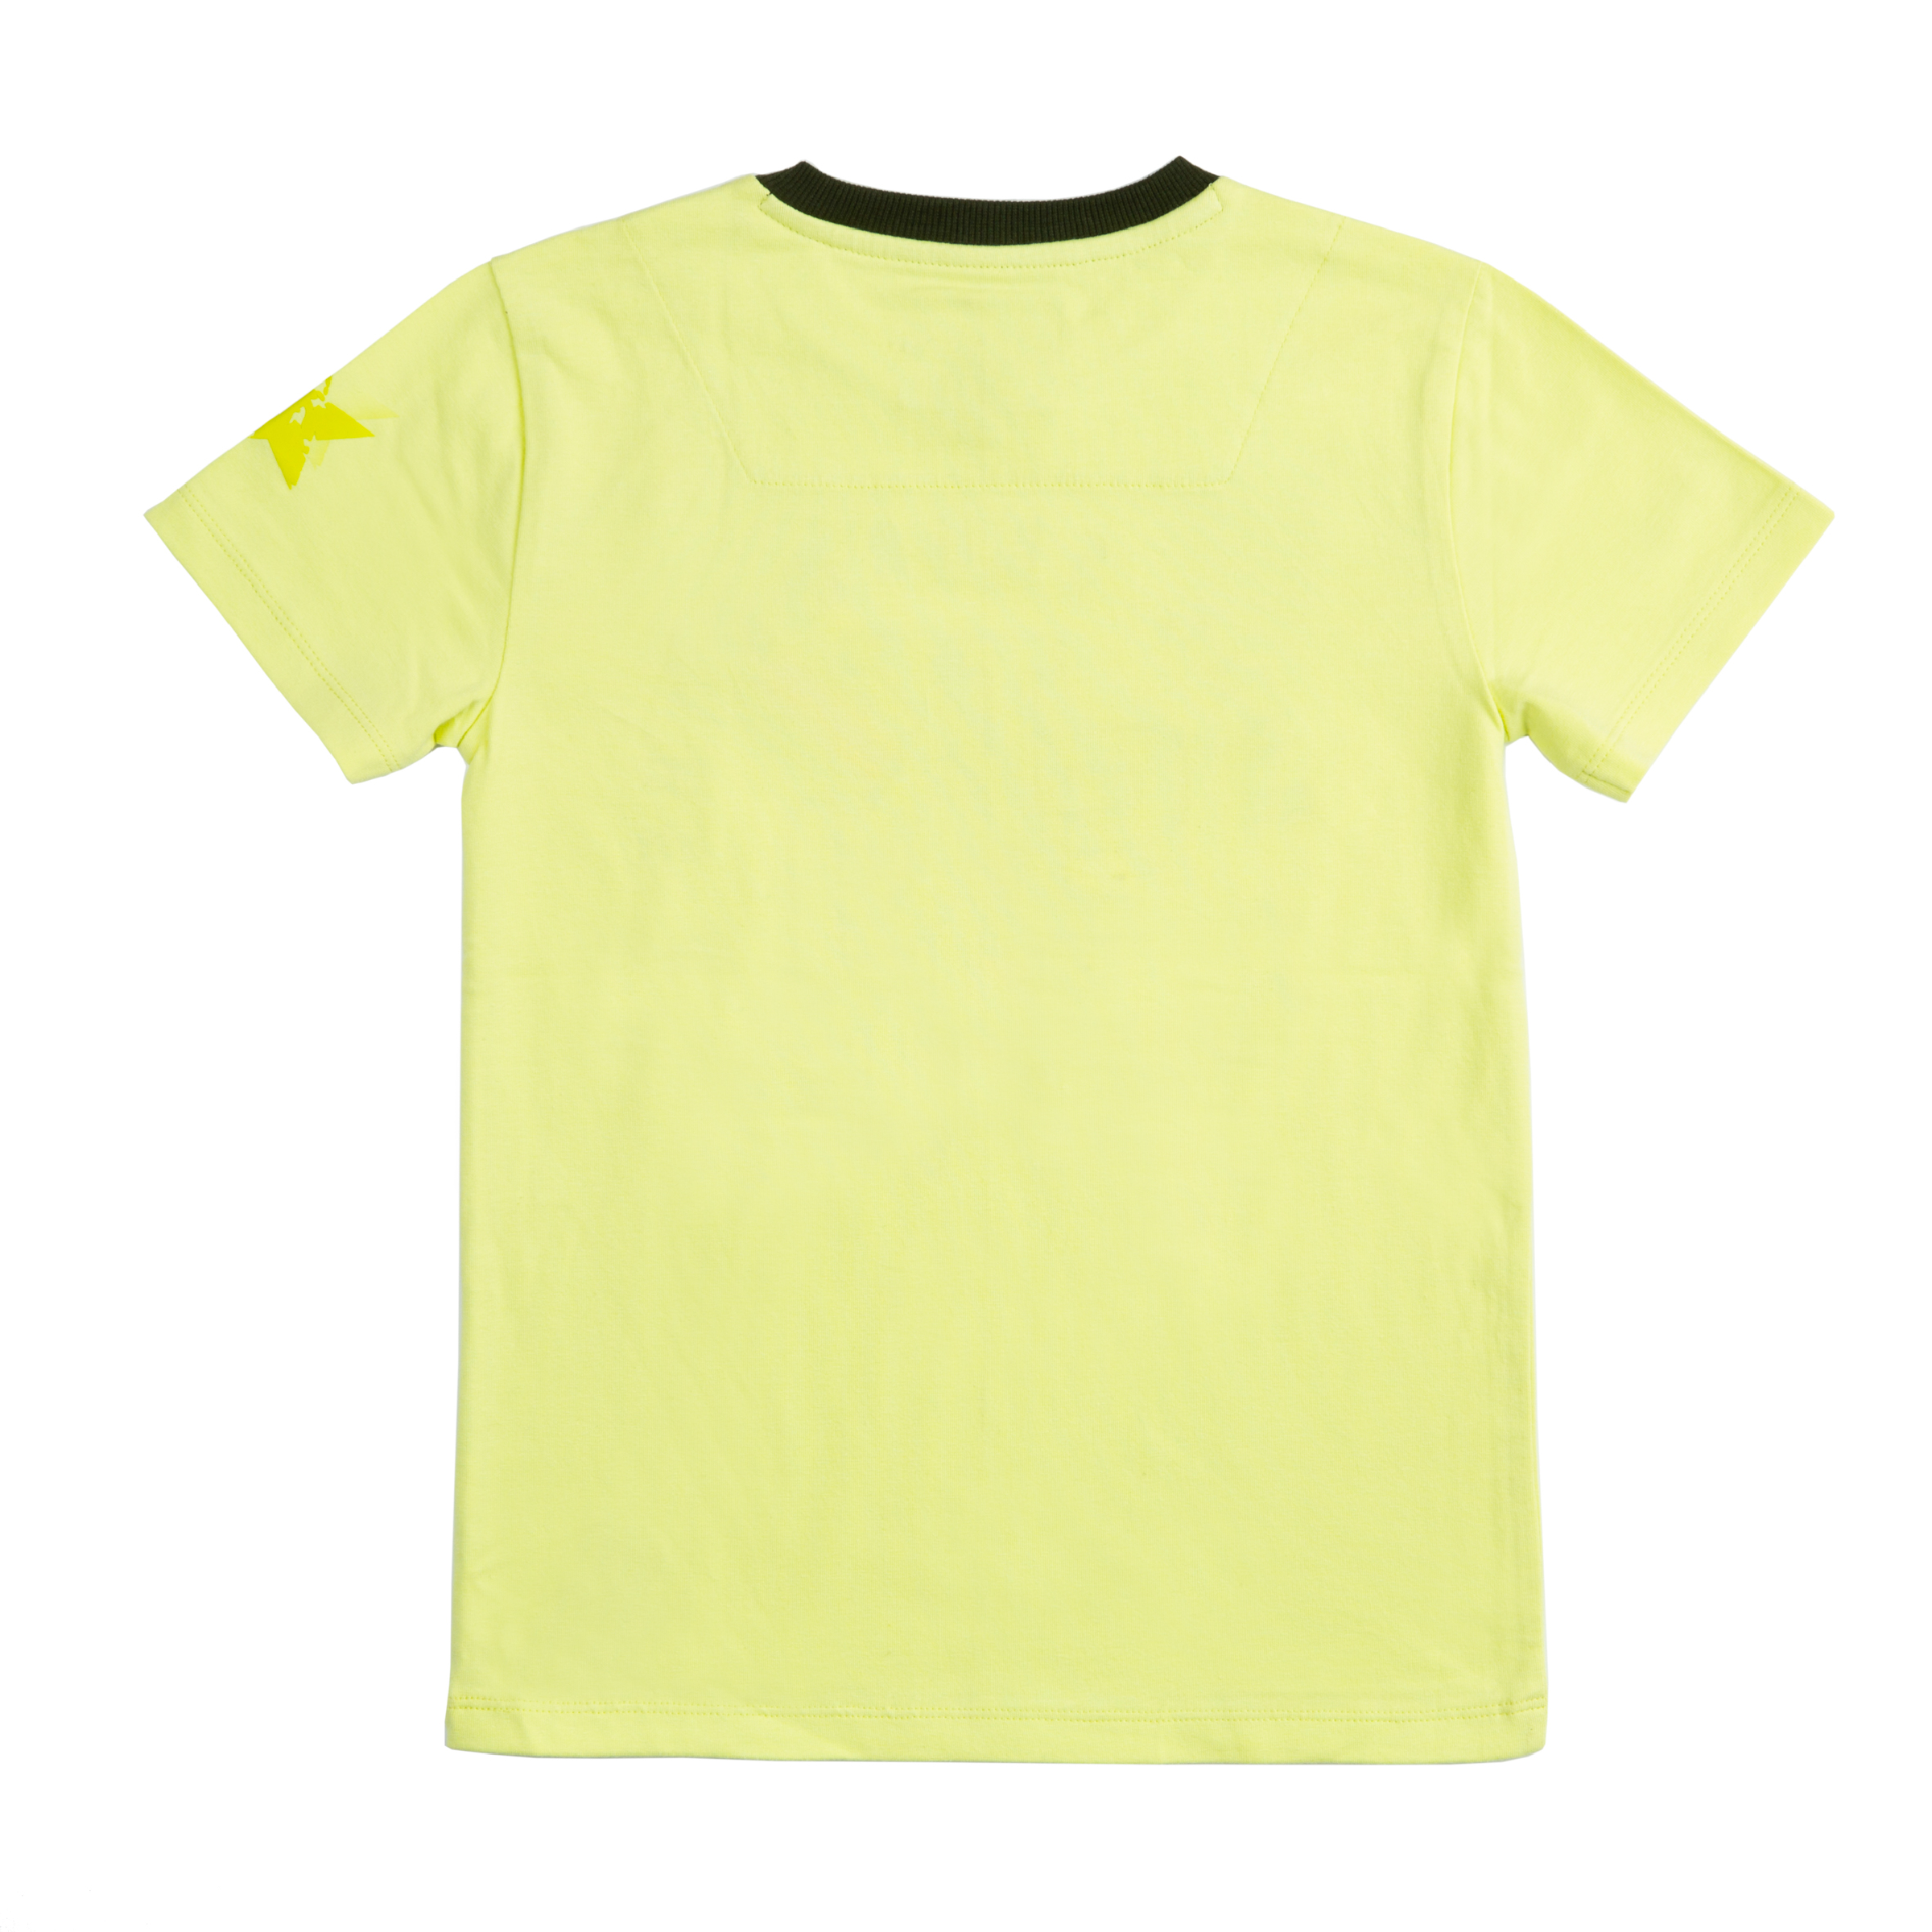 Jongens T-shirt Tex van Skurk in de kleur Lime in maat 164, 170.